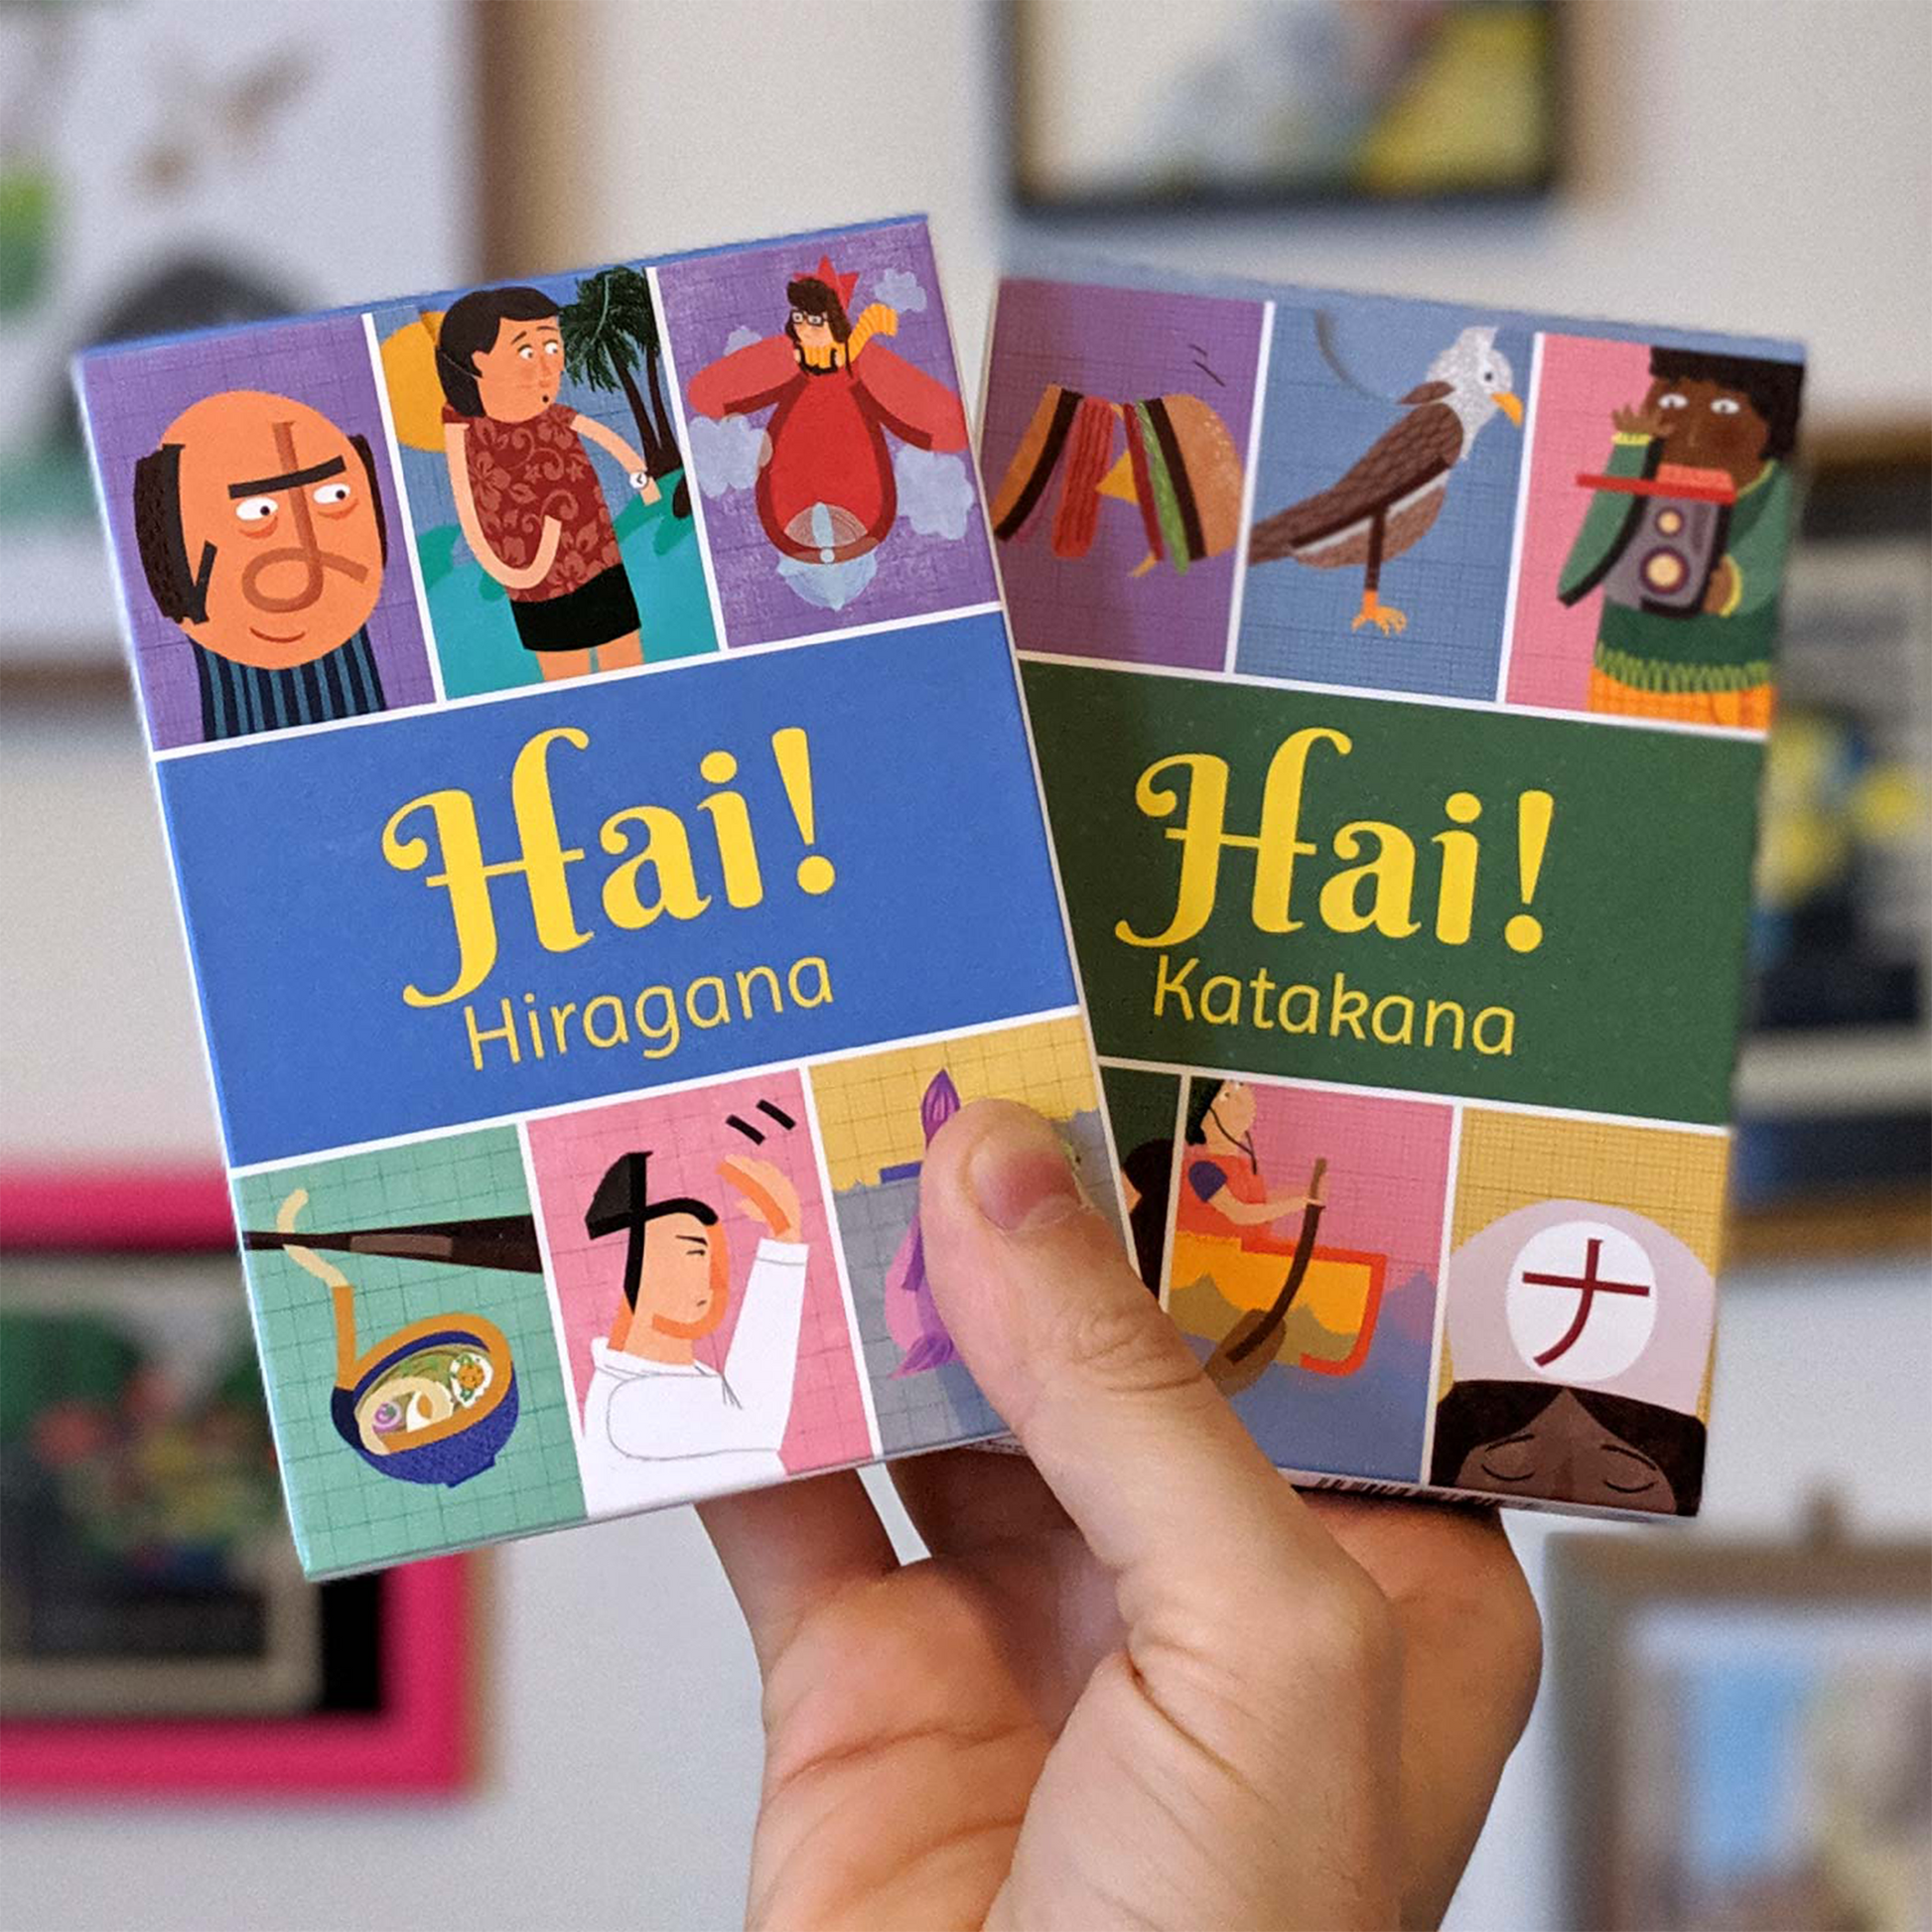 Hai! Hiragana Katakana - Japanese Flashcards